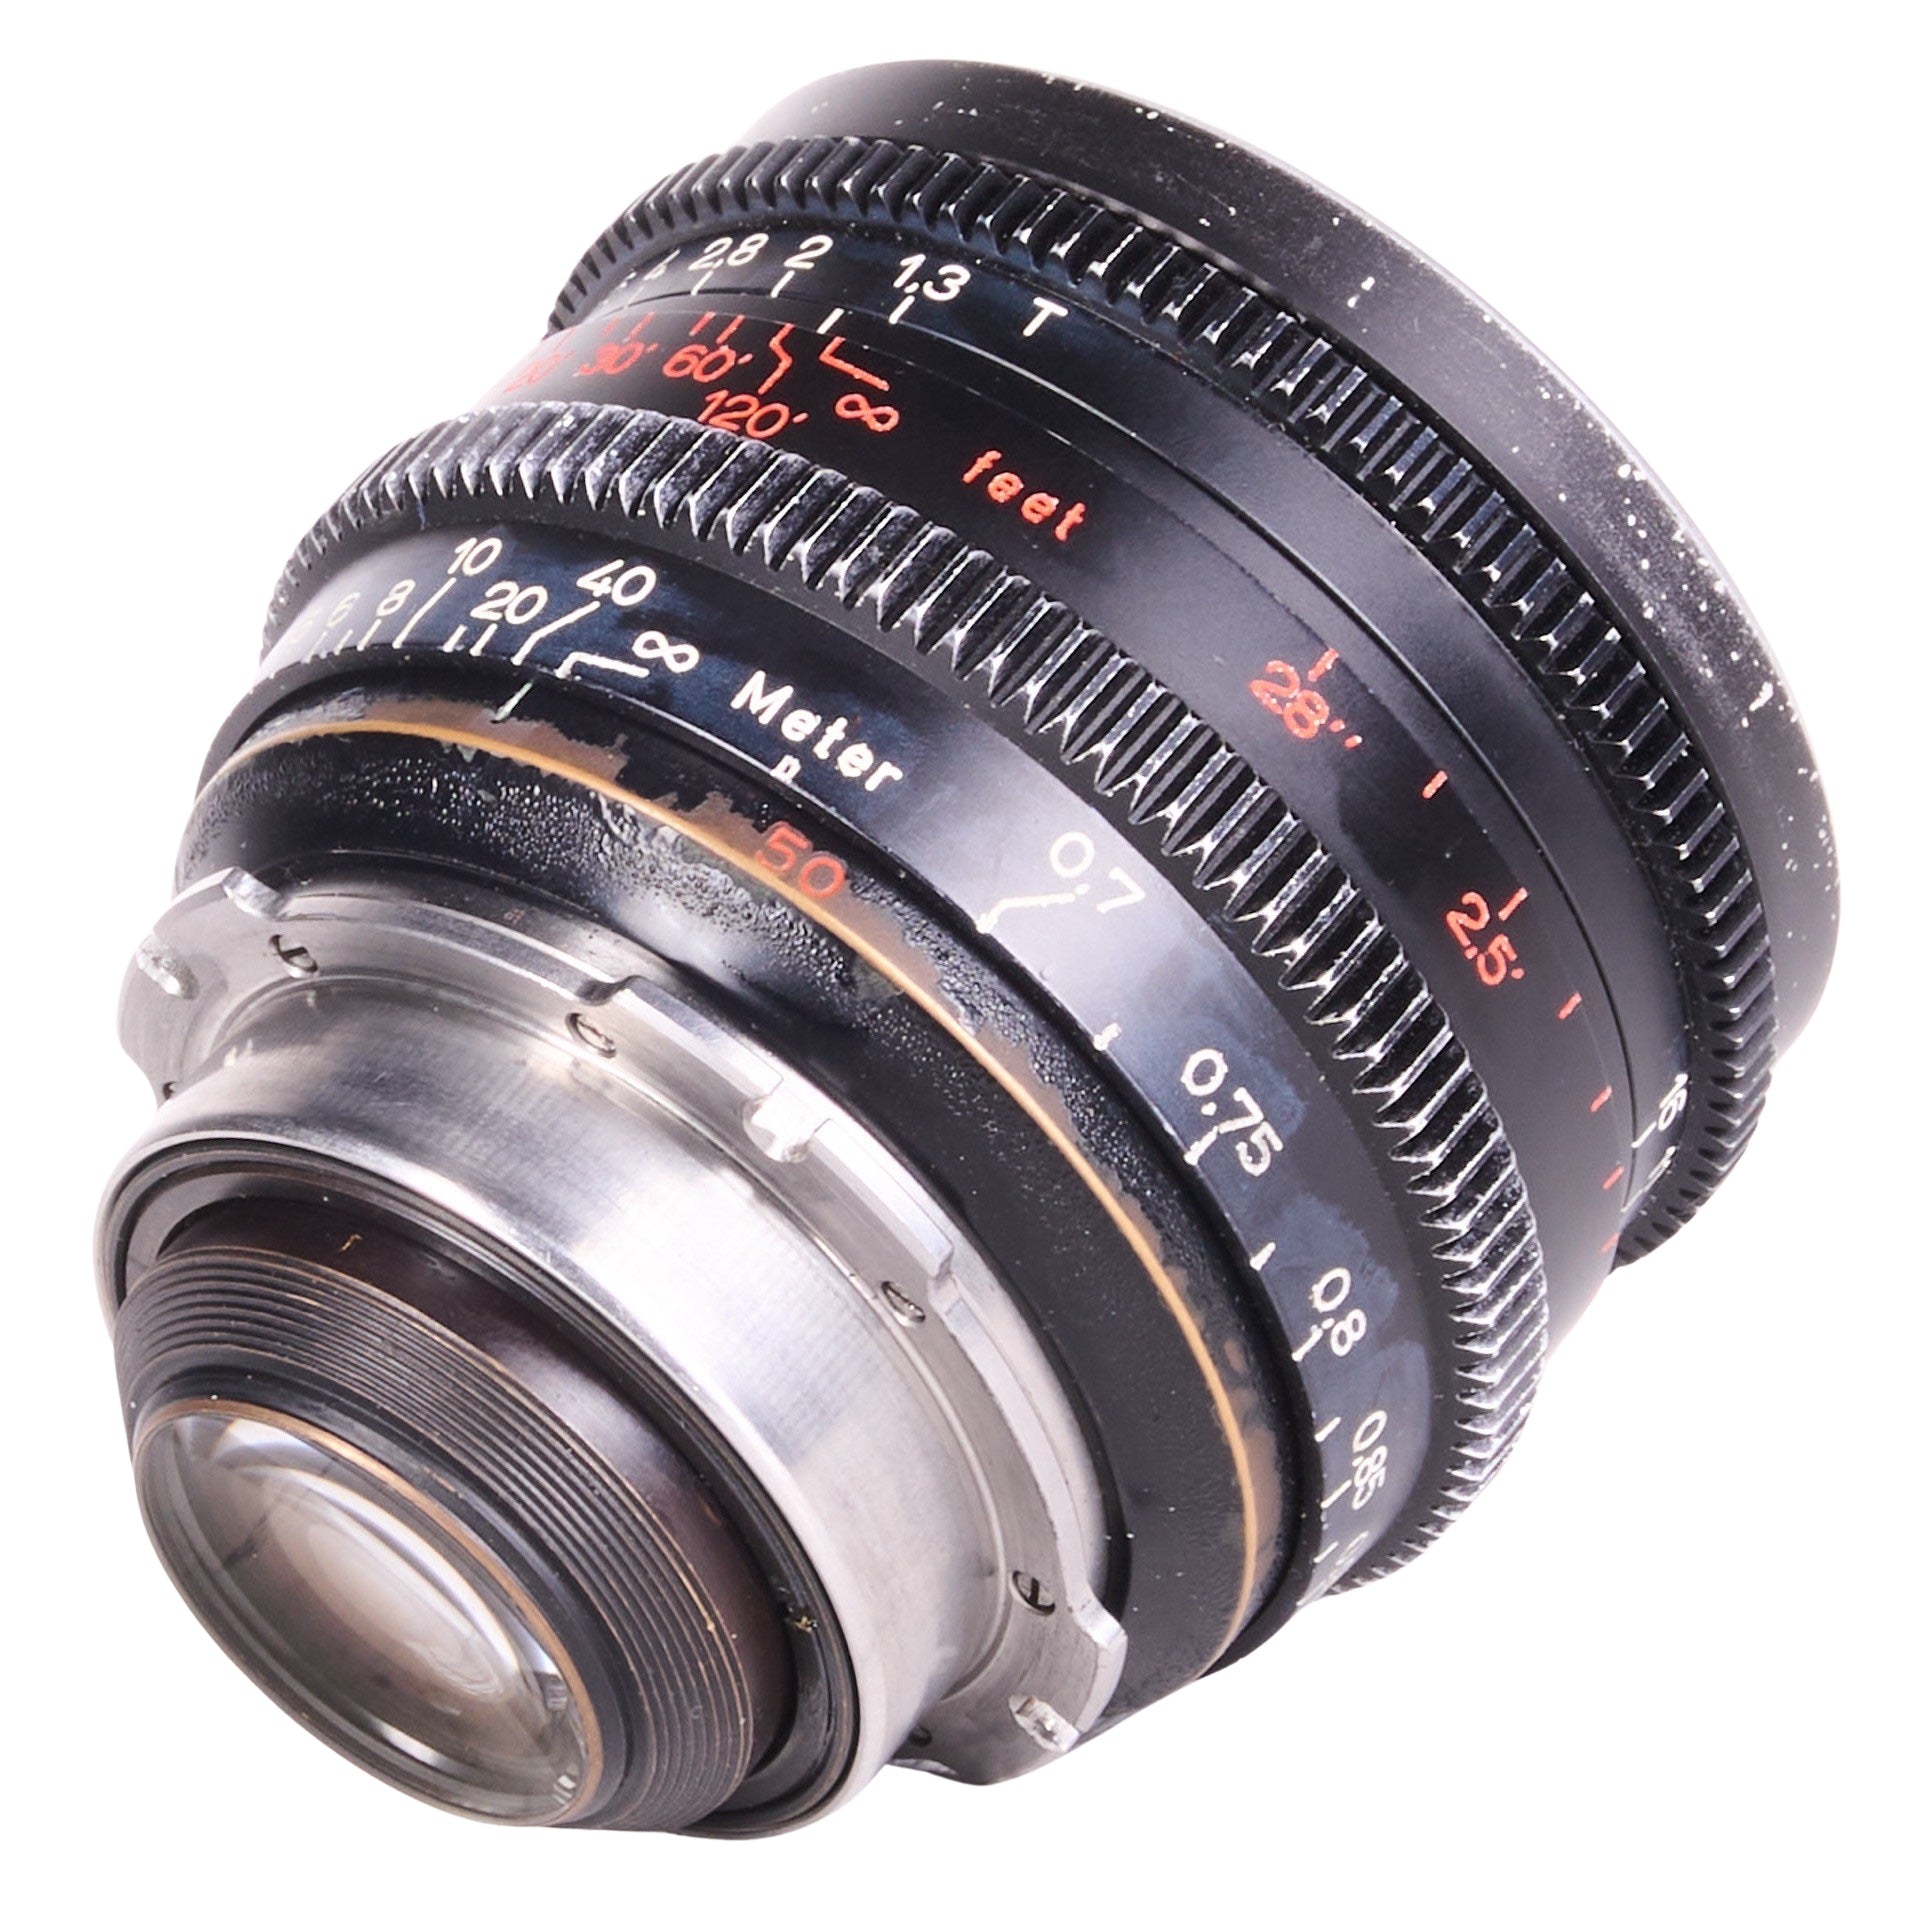 LENS3294-1305 ZEISS Super Speed MII Lens Set 18mm 25mm 35mm 50mm 85mm PL Mount & Hard Case _000707.JPG